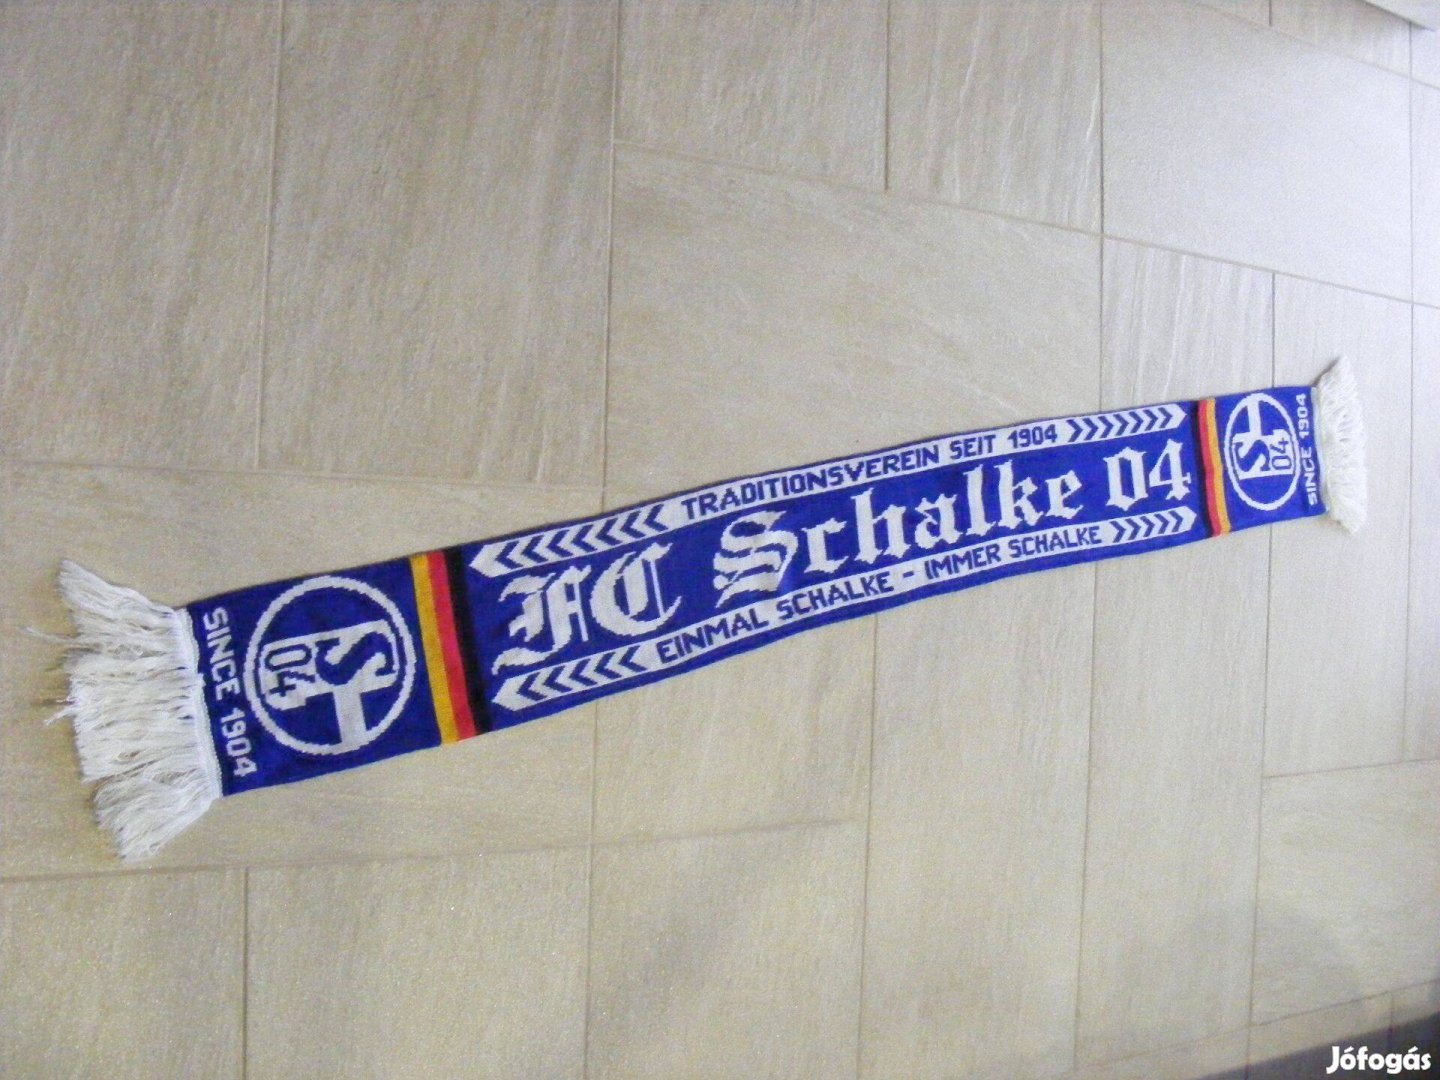 FC Schalke 04 since 1904 szurkolóisál , szurkolói sál, gyűjteményből